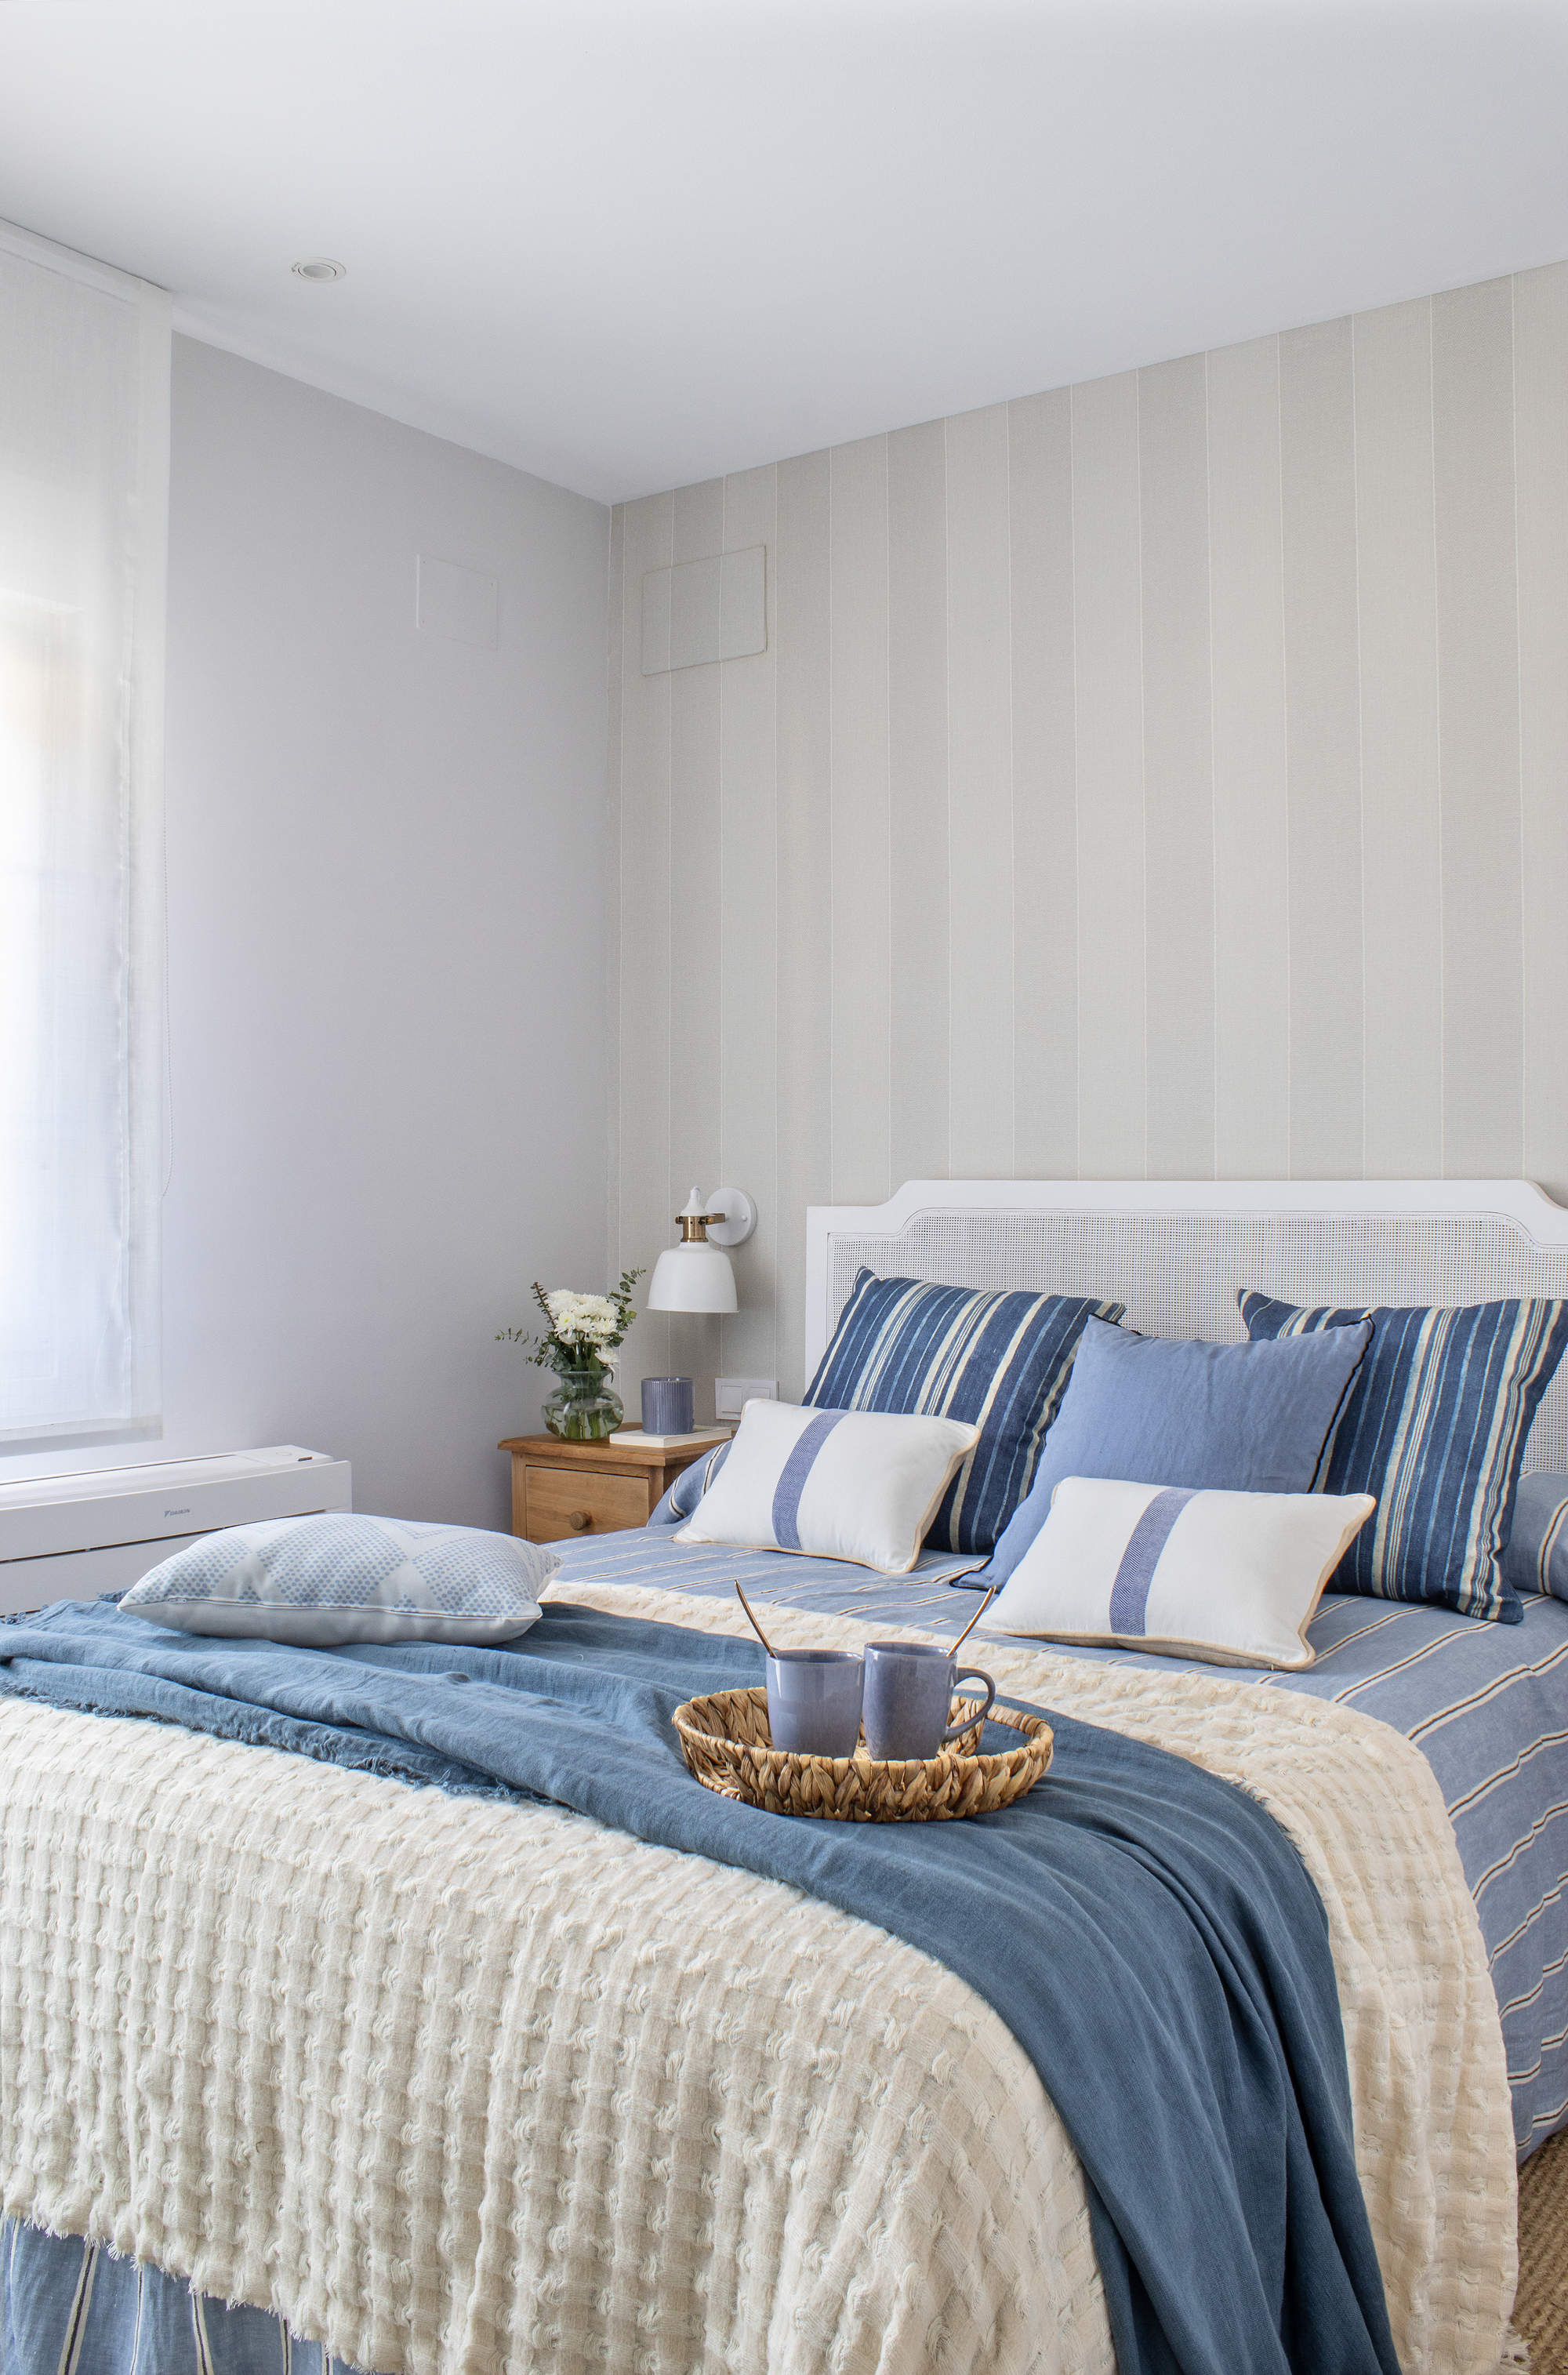 Un dormitorio principal con papel pintado de rayas en color neutro y colcha y cojines en azul y rayas.